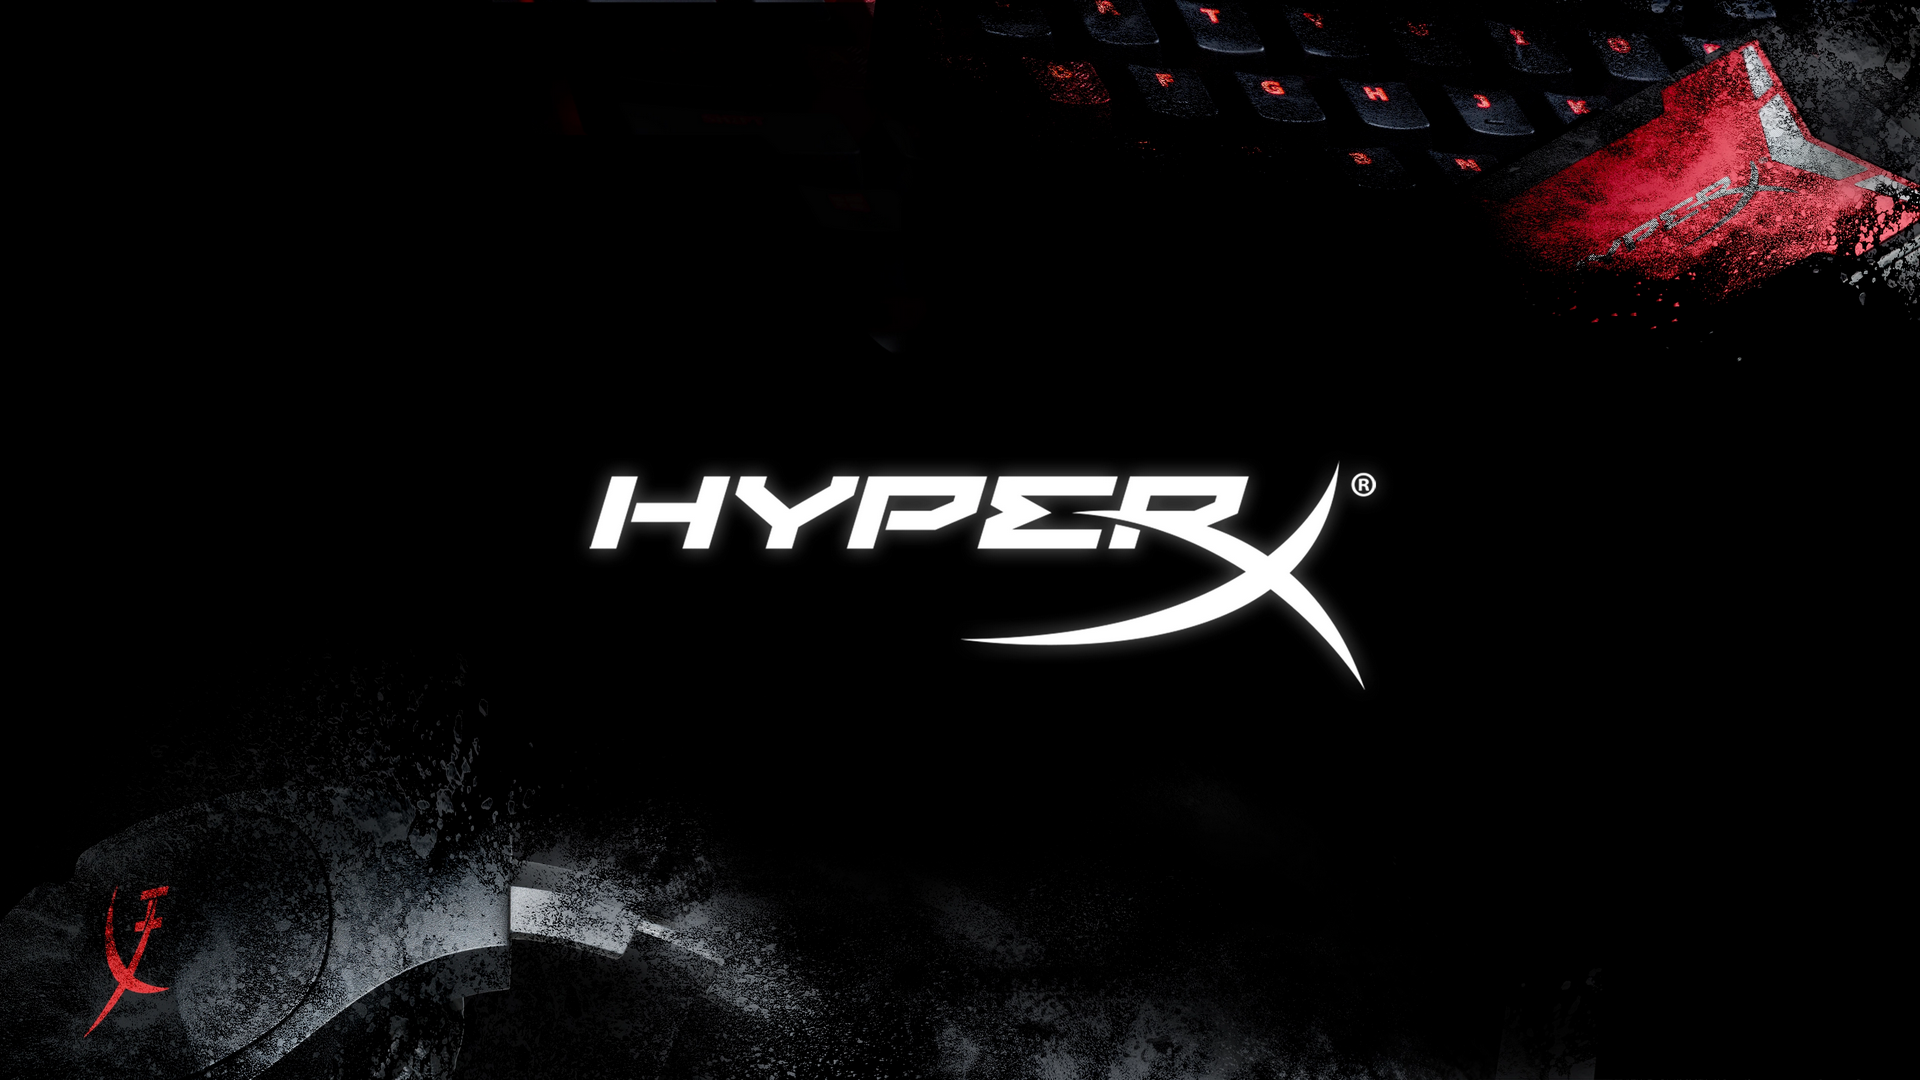 HyperX: Bạn là một game thủ đích thực và muốn sở hữu những sản phẩm công nghệ chất lượng cao? Hãy xem hình ảnh liên quan đến thương hiệu HyperX đến từ Mỹ, với những sản phẩm đỉnh cao về chất lượng và hiệu suất.